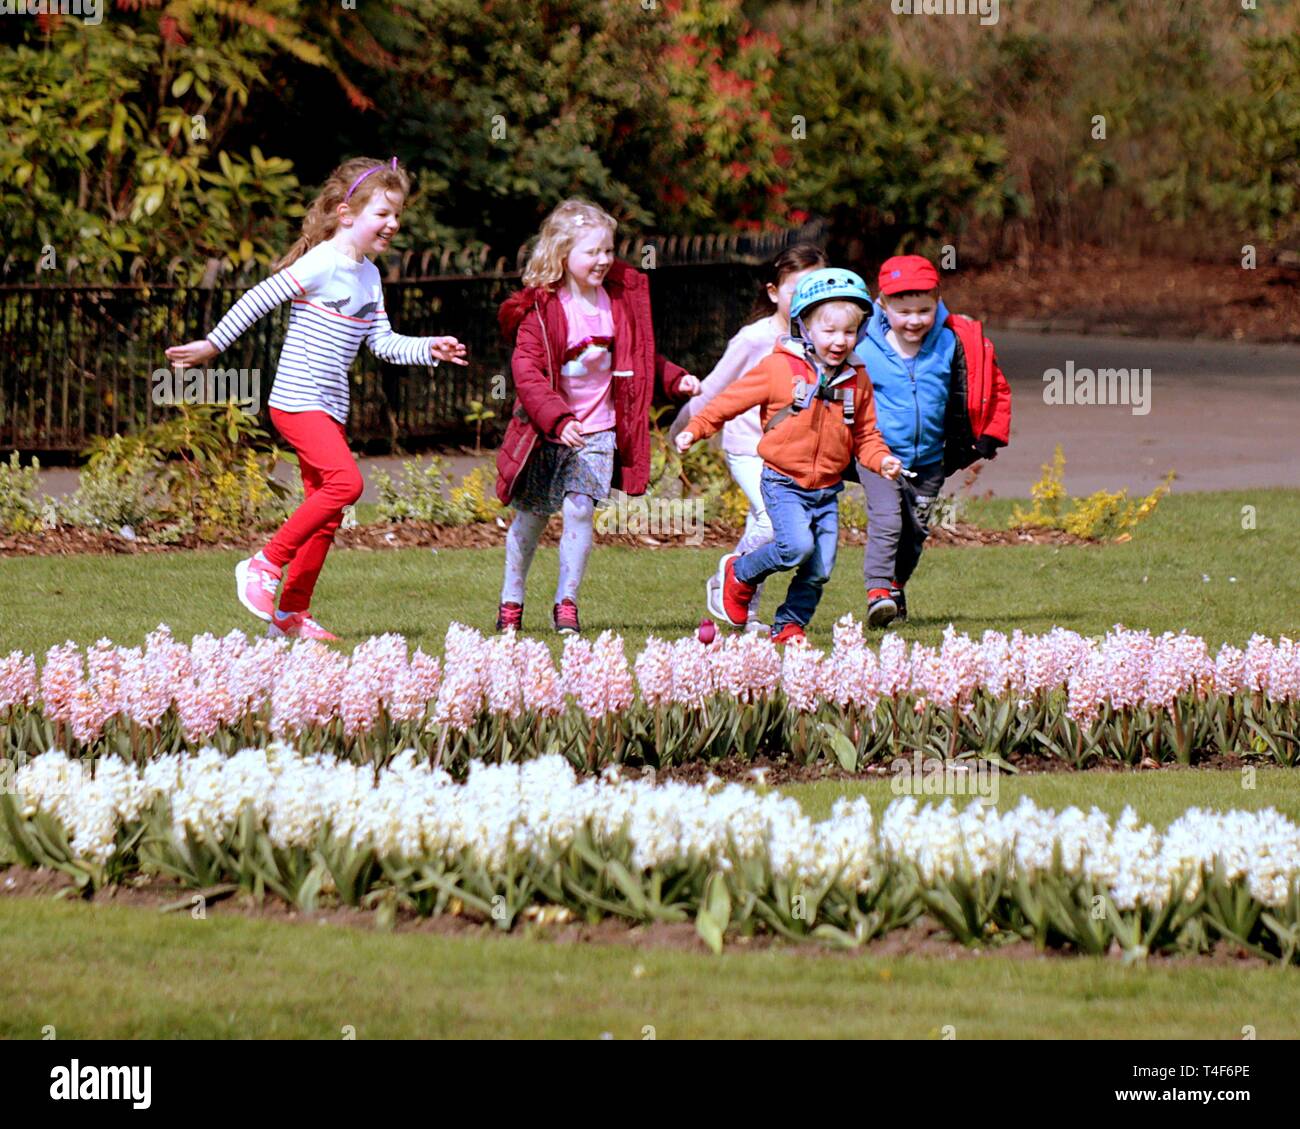 Glasgow, Ecosse, Royaume-Uni. Apr 11, 2019. Météo France : journée d'été ensoleillée dans le parc Victoria, comme la ville, espaces verts fleur s'affiche comme les jeux des enfants Banque D'Images